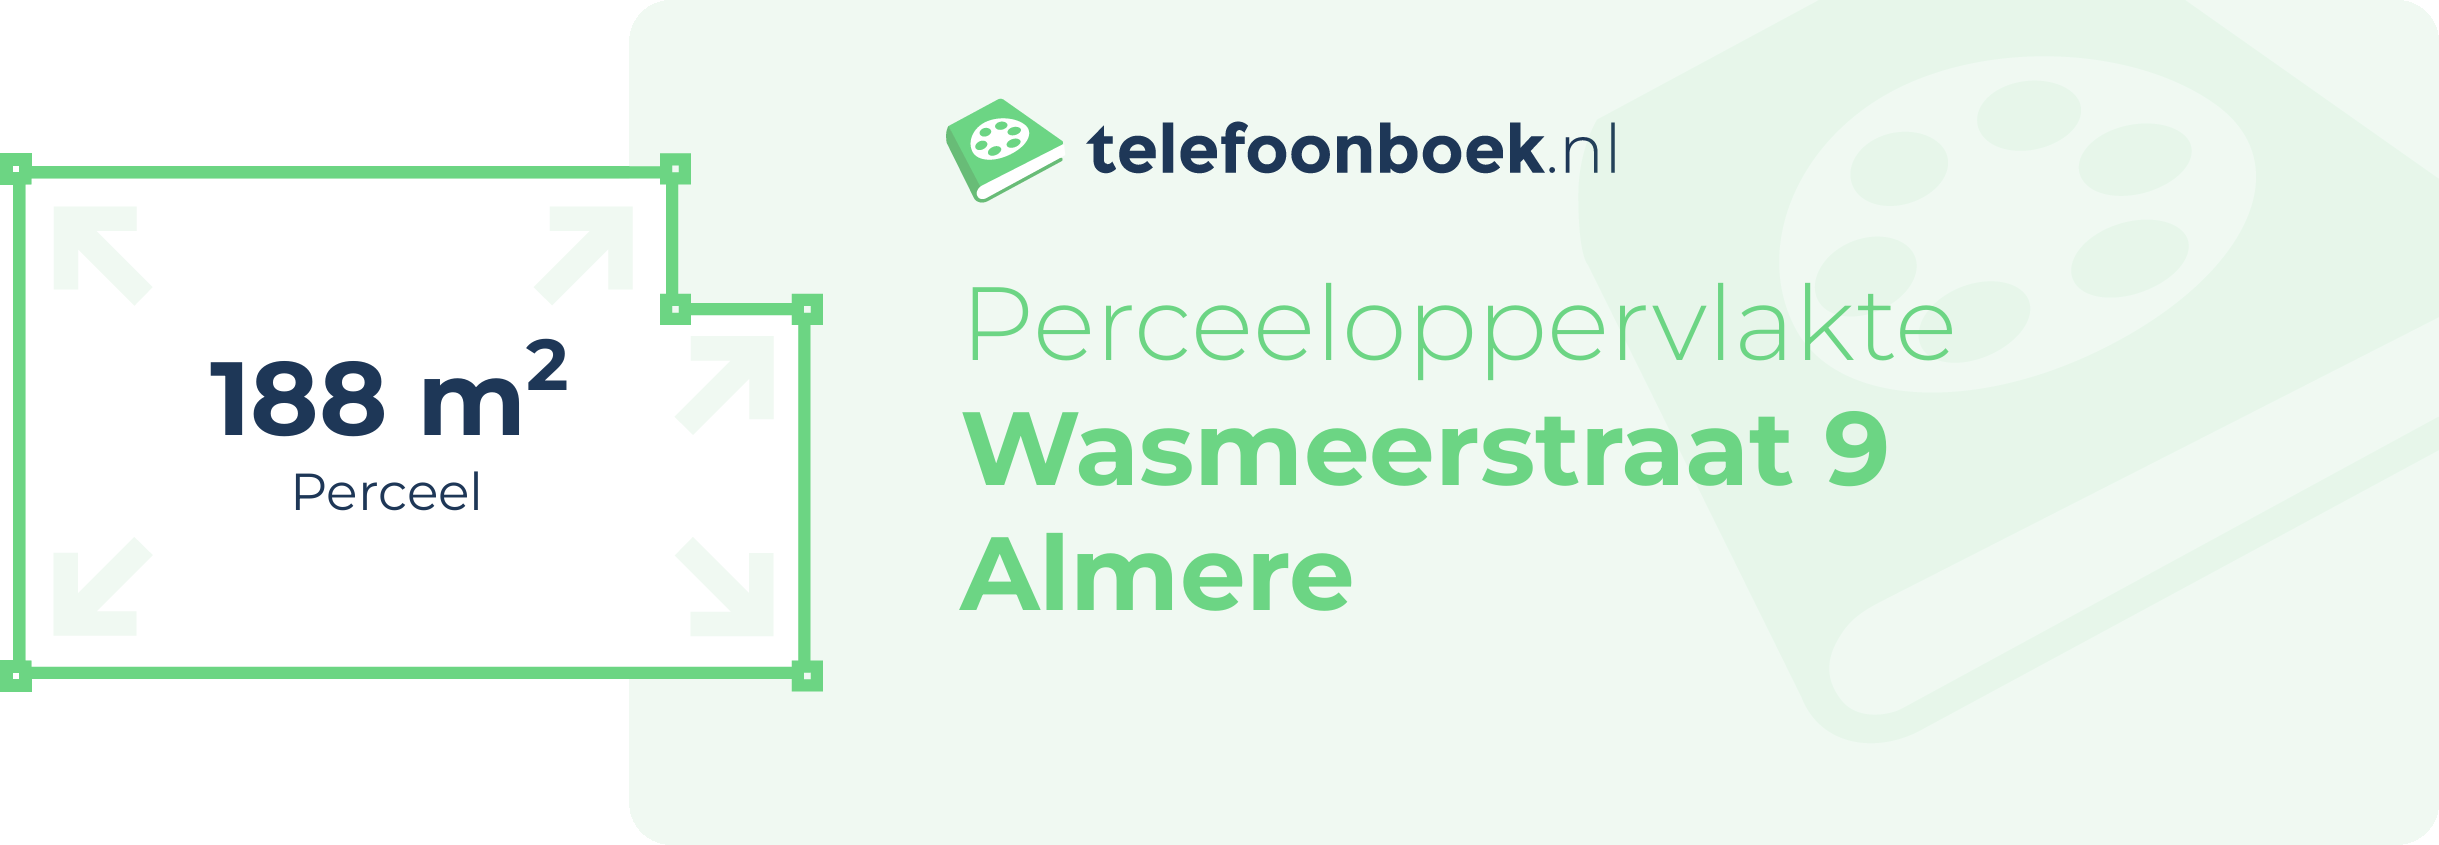 Perceeloppervlakte Wasmeerstraat 9 Almere